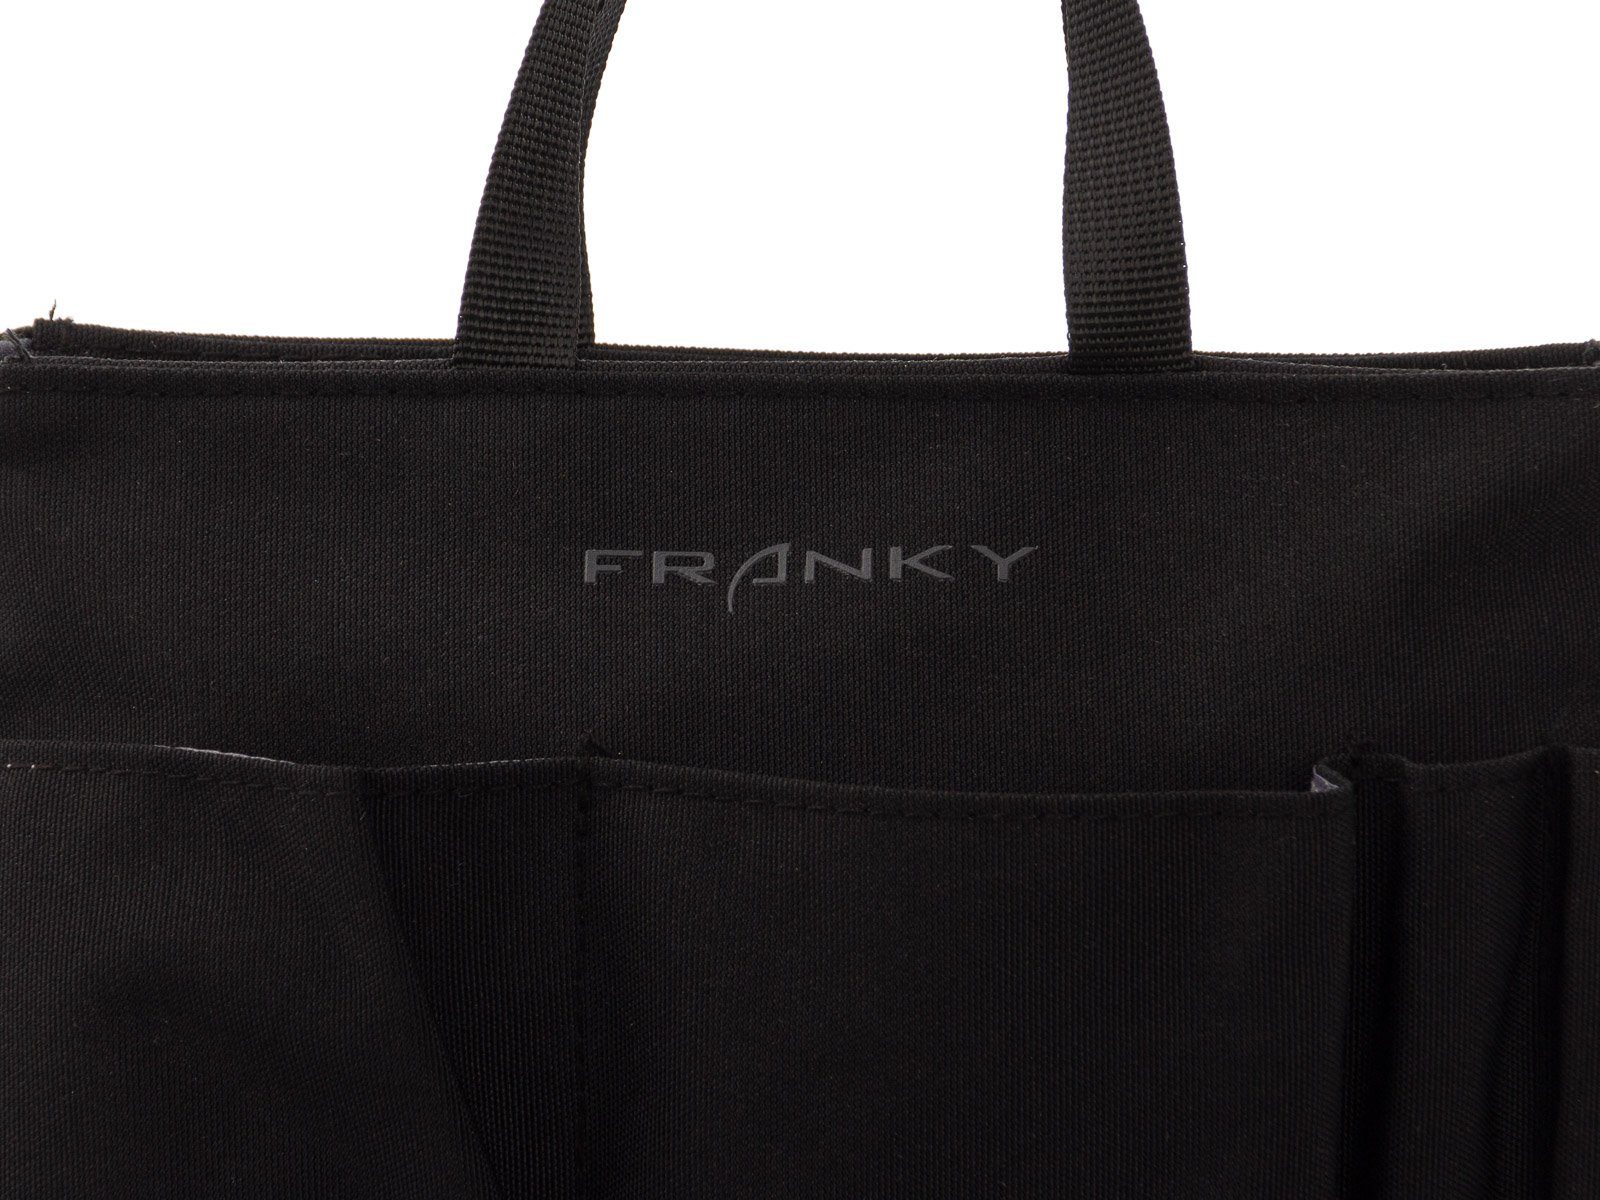 Kofferorganizer Taschen Packtasche, Franky Franky Organizer Bag BO2 schwarz in Bag